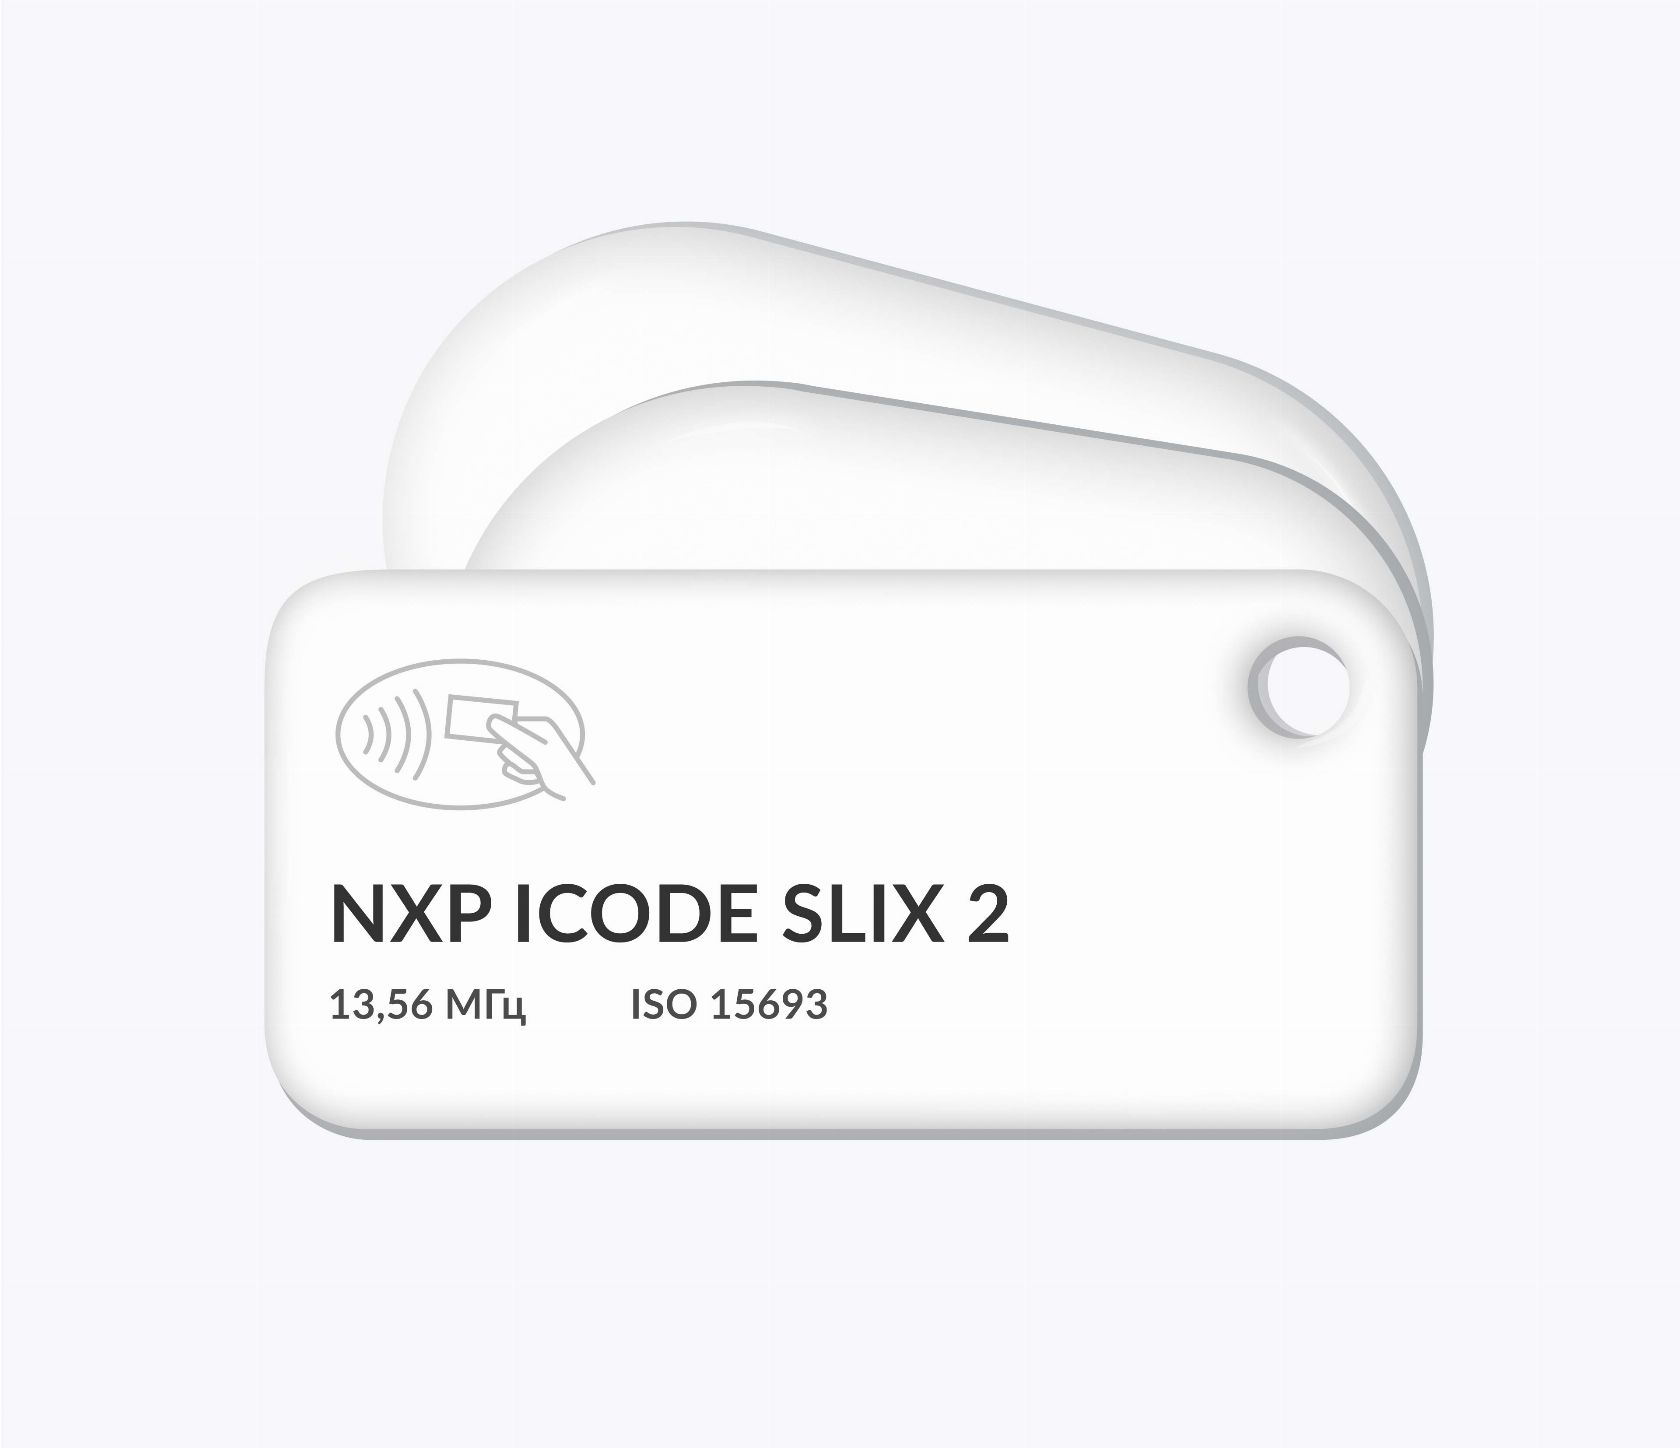 RFID-брелоки NEOKEY® с чипом NXP ICODE SLIX 2 и вашим логотипом